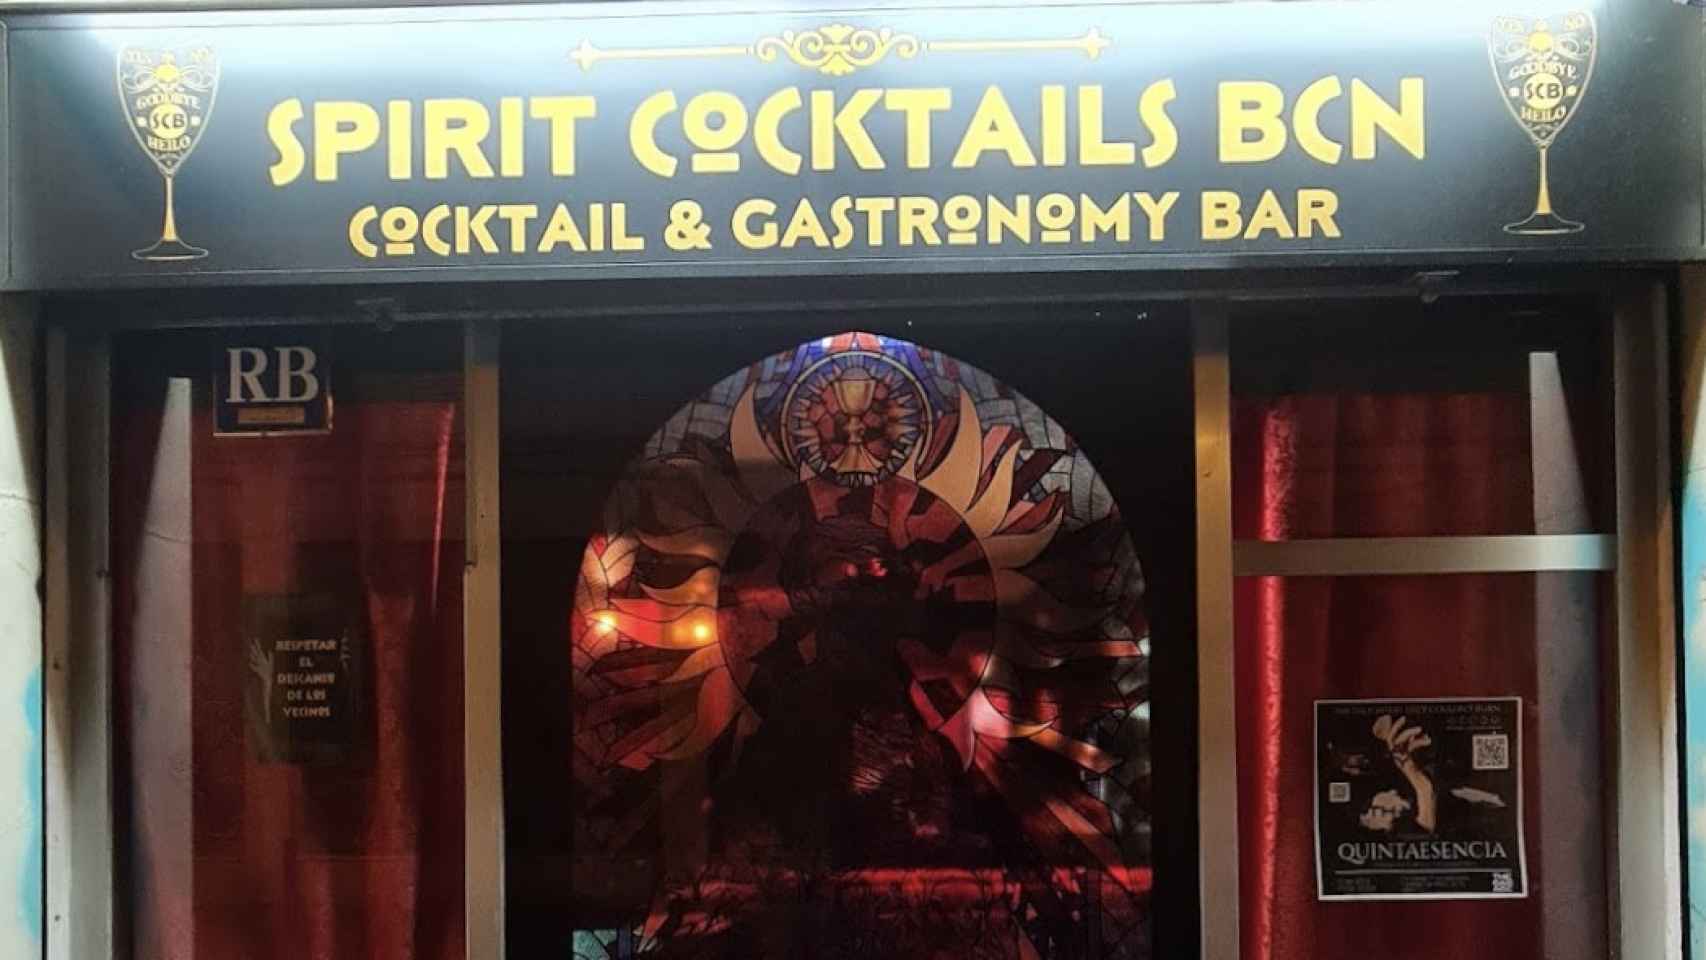 Vista exterior del bar Spirit Cocktails, el bar situado en Barcelona.